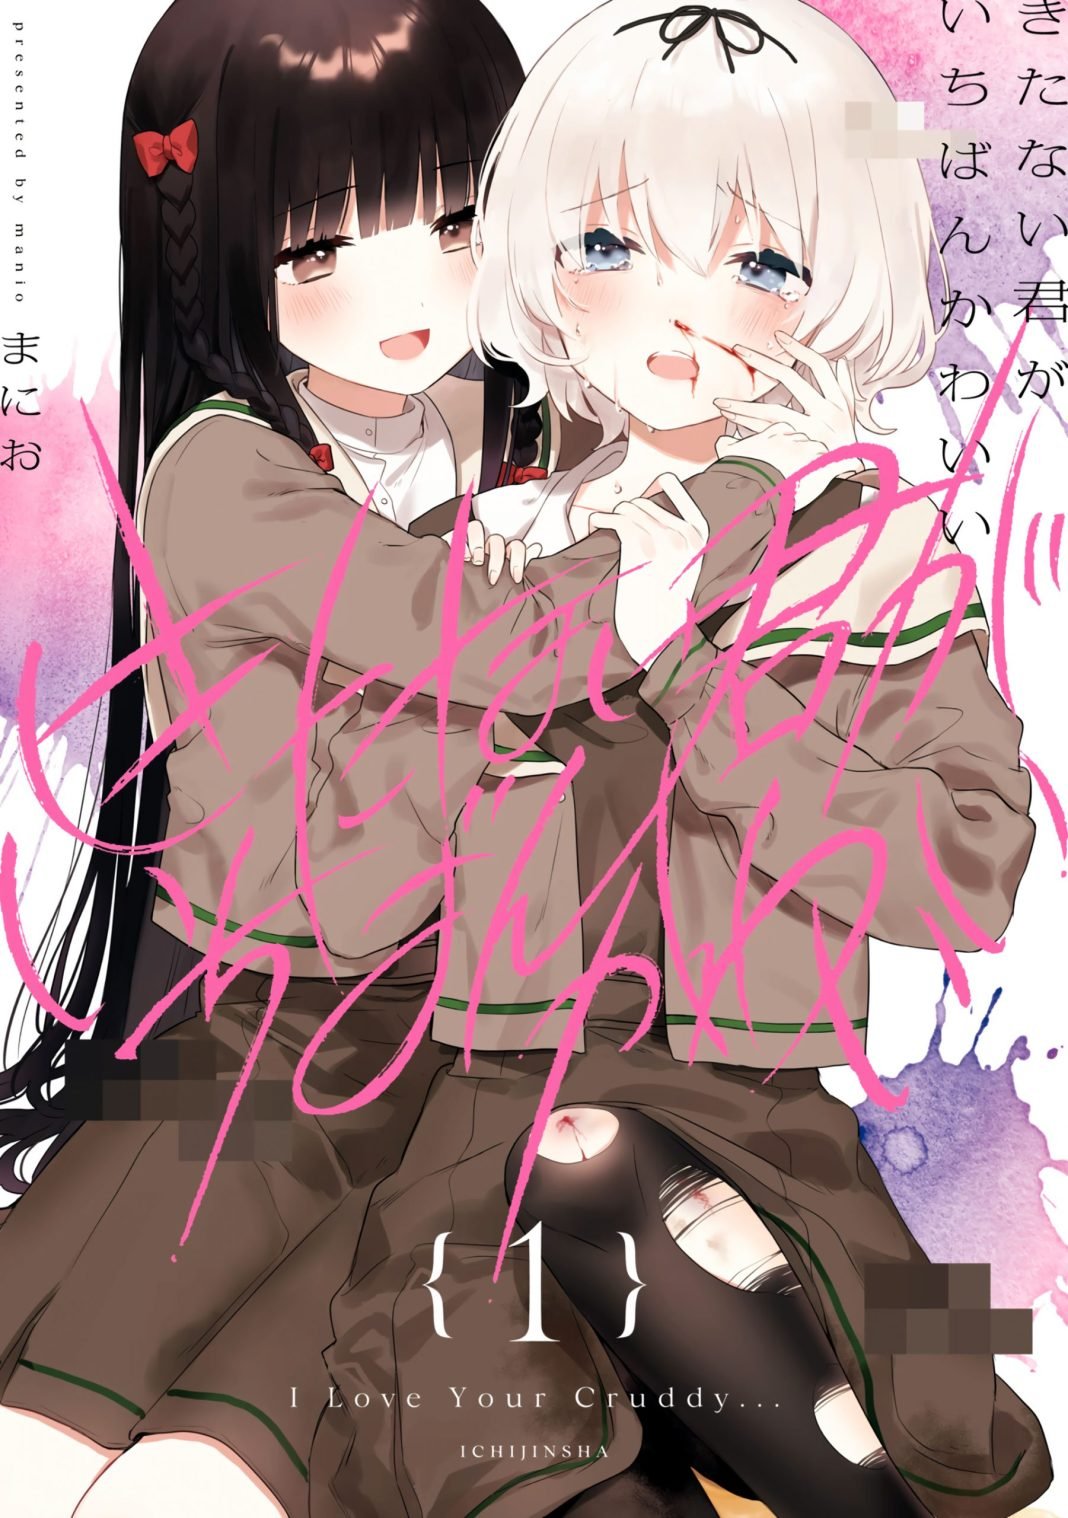 Kitanai Kimi ga Ichiban Kawaii vol 1 cover